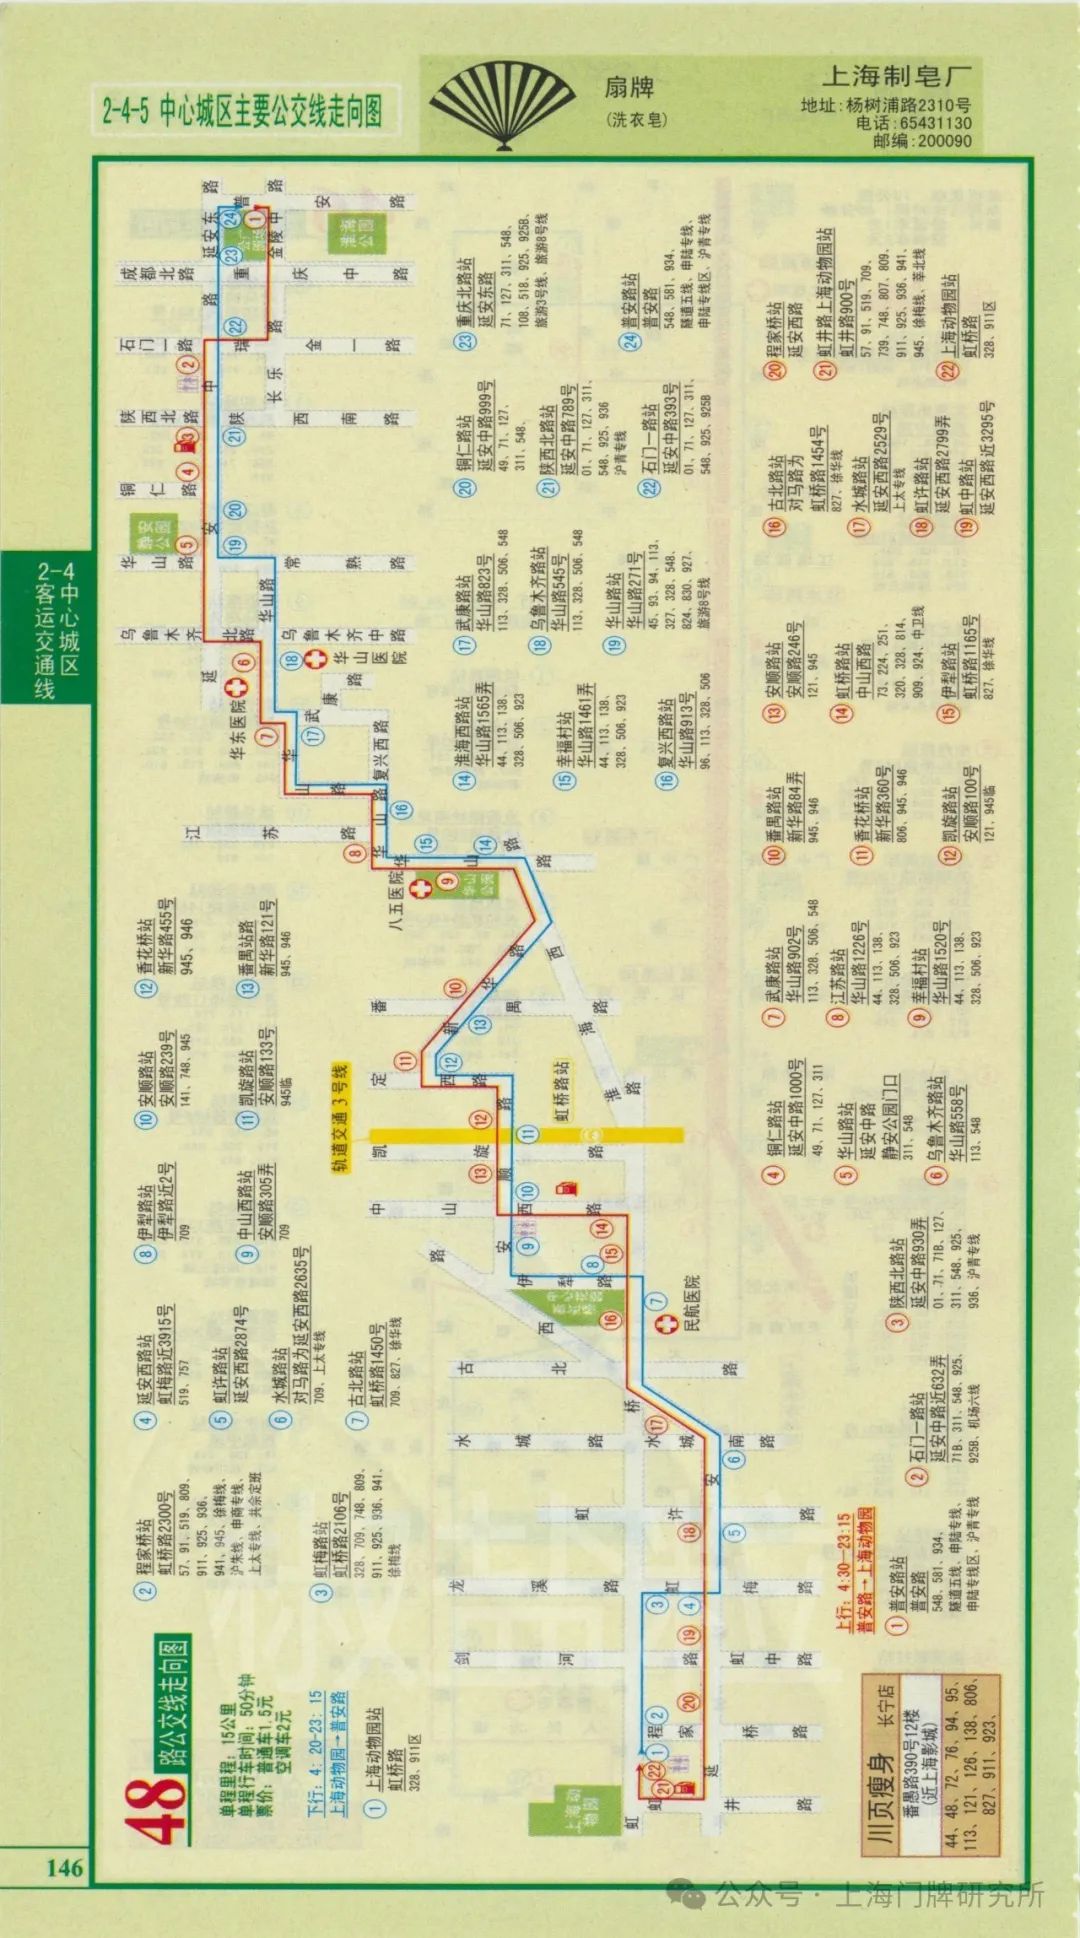 48路公交车的线路图图片